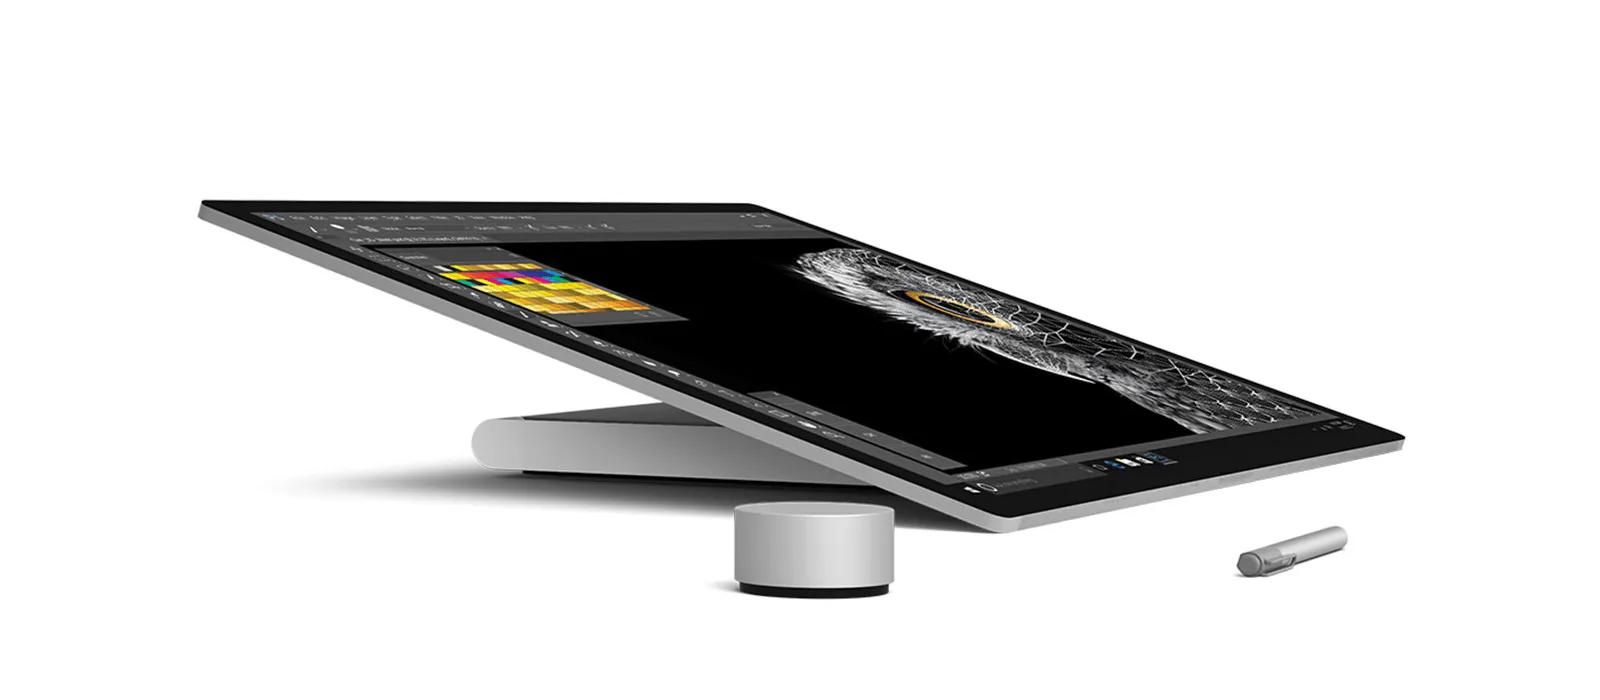 Das Surface Studio 2 ist in den Studio-Mode geneigt, daneben liegen ein Surface Pen und ein Surface Dial